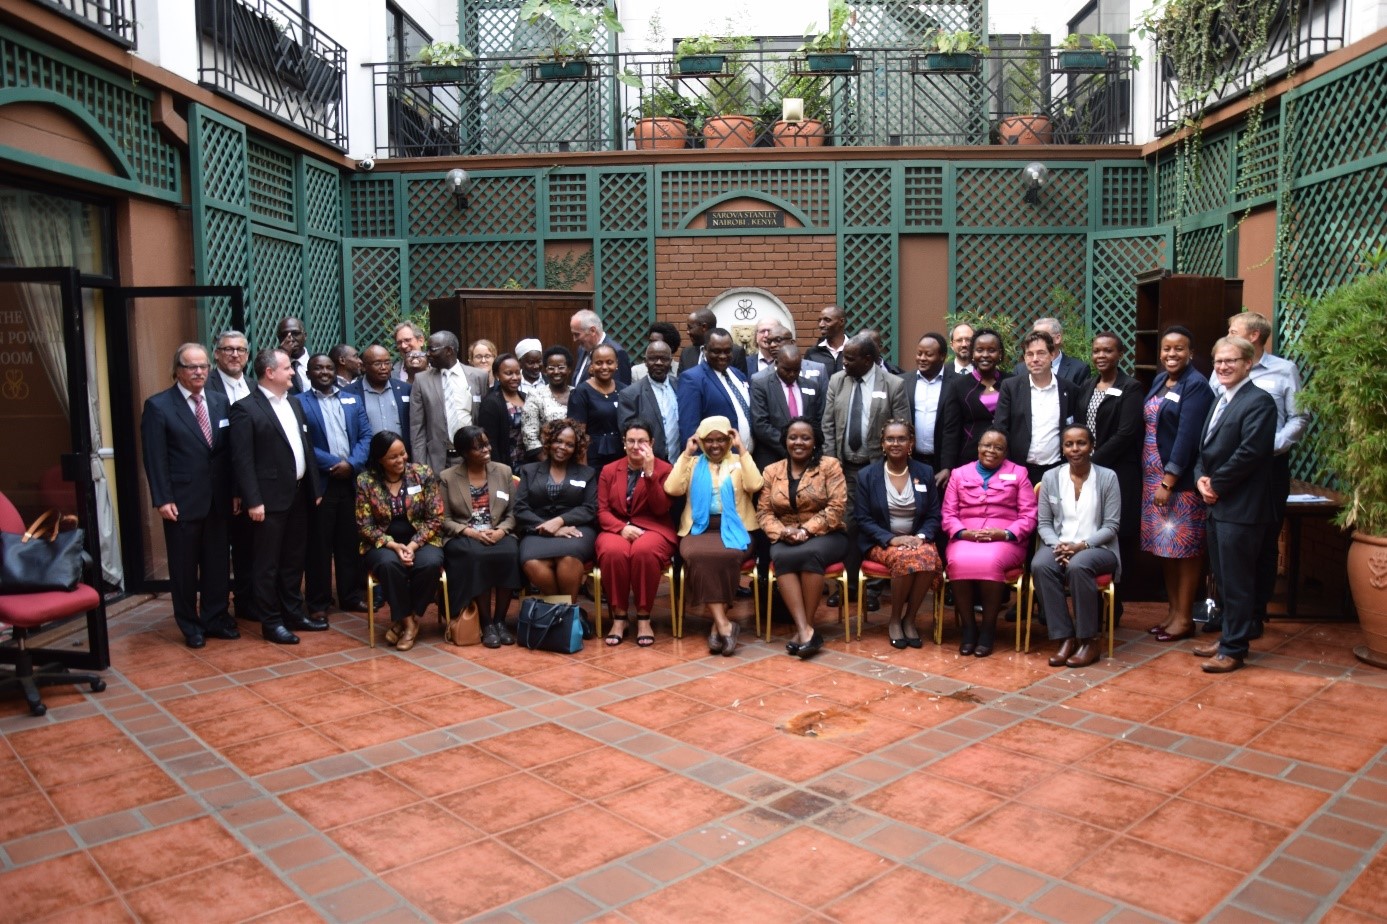 Members of the ESB Business School Netzwerk HAW Kenia project